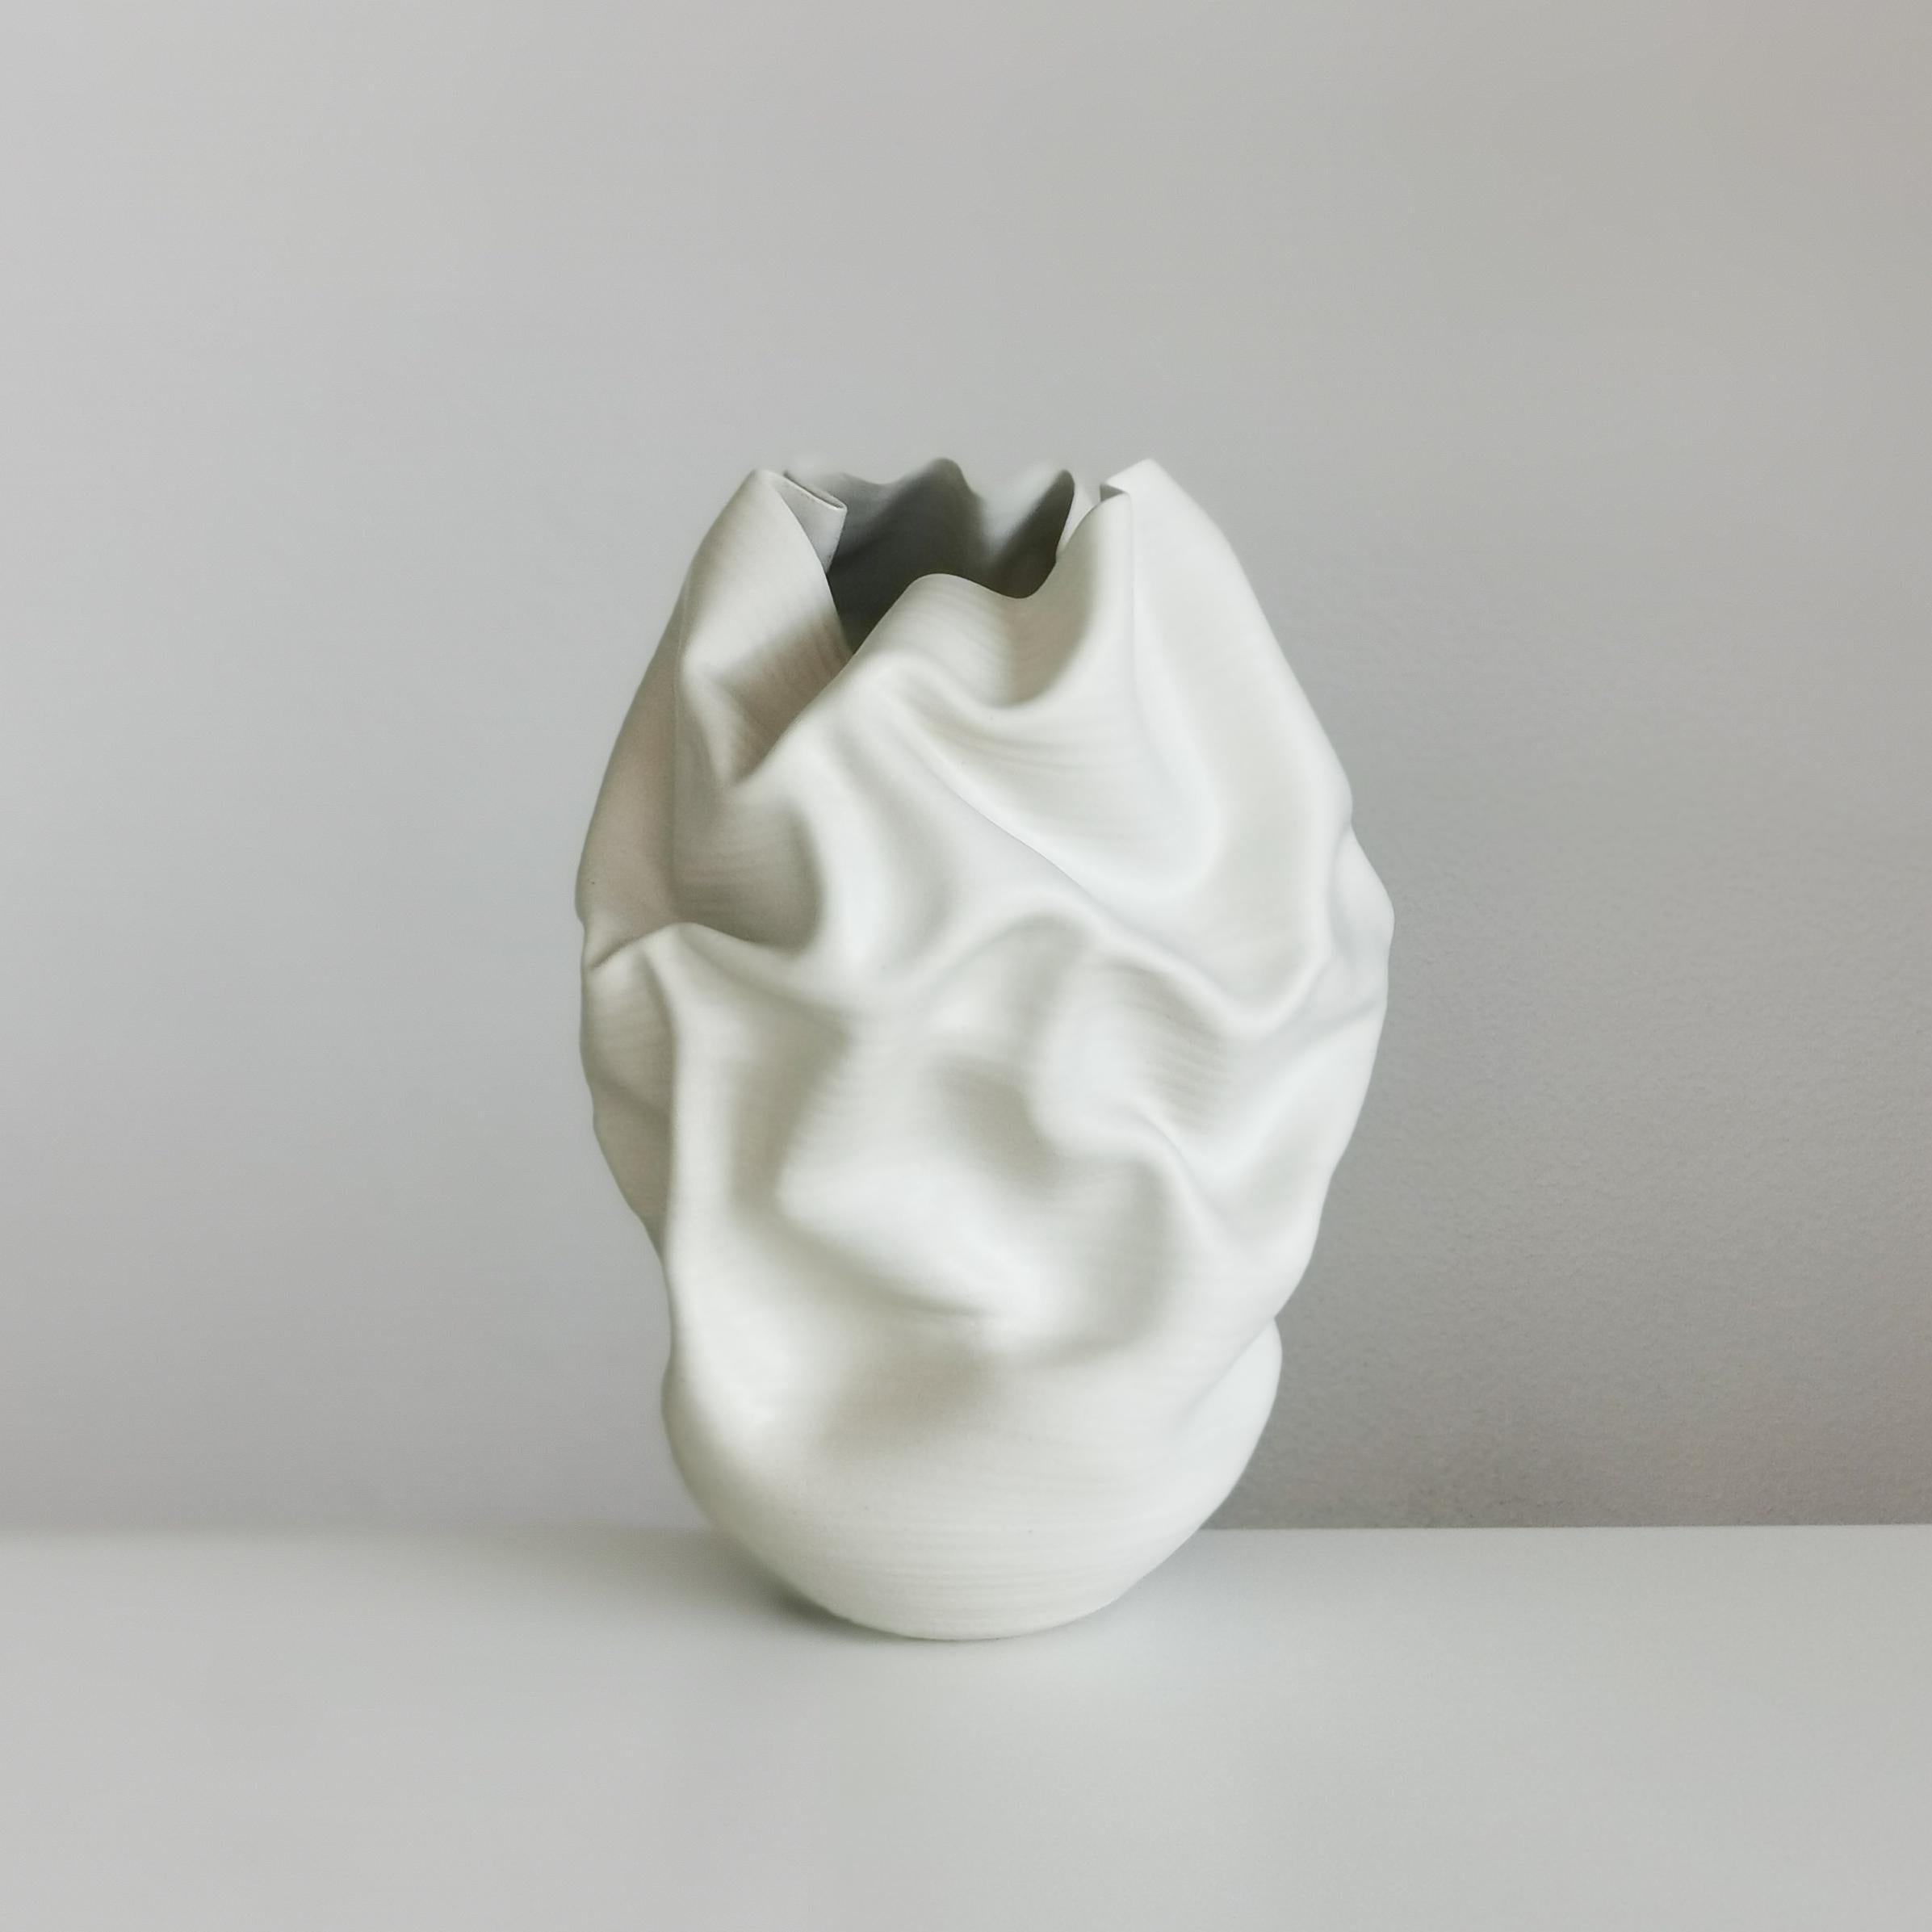 Contemporary Medium Tall White Undulating Crumpled Form, Unique Ceramic Sculpture Vessel N.51